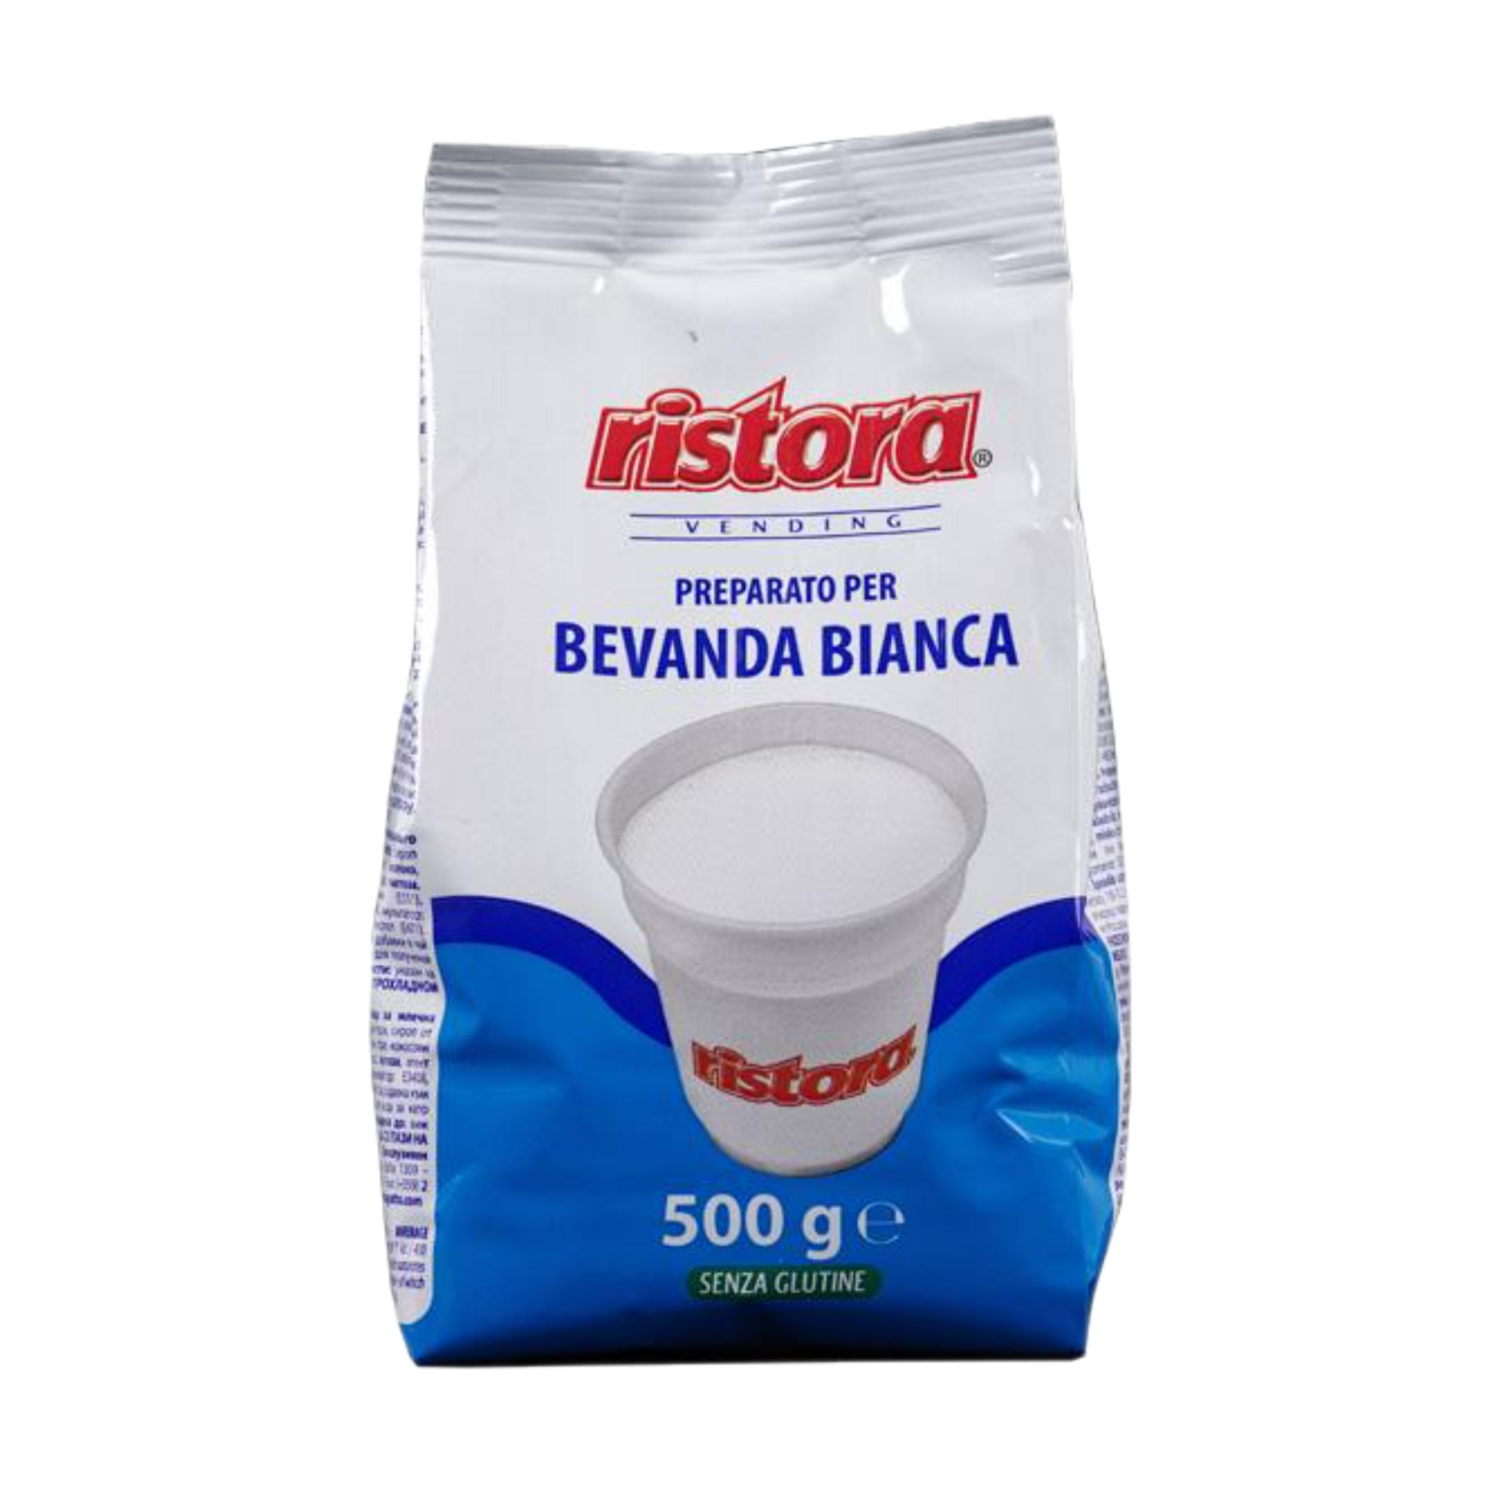 Ristora Vending Blue Premium млеко 500 гр.